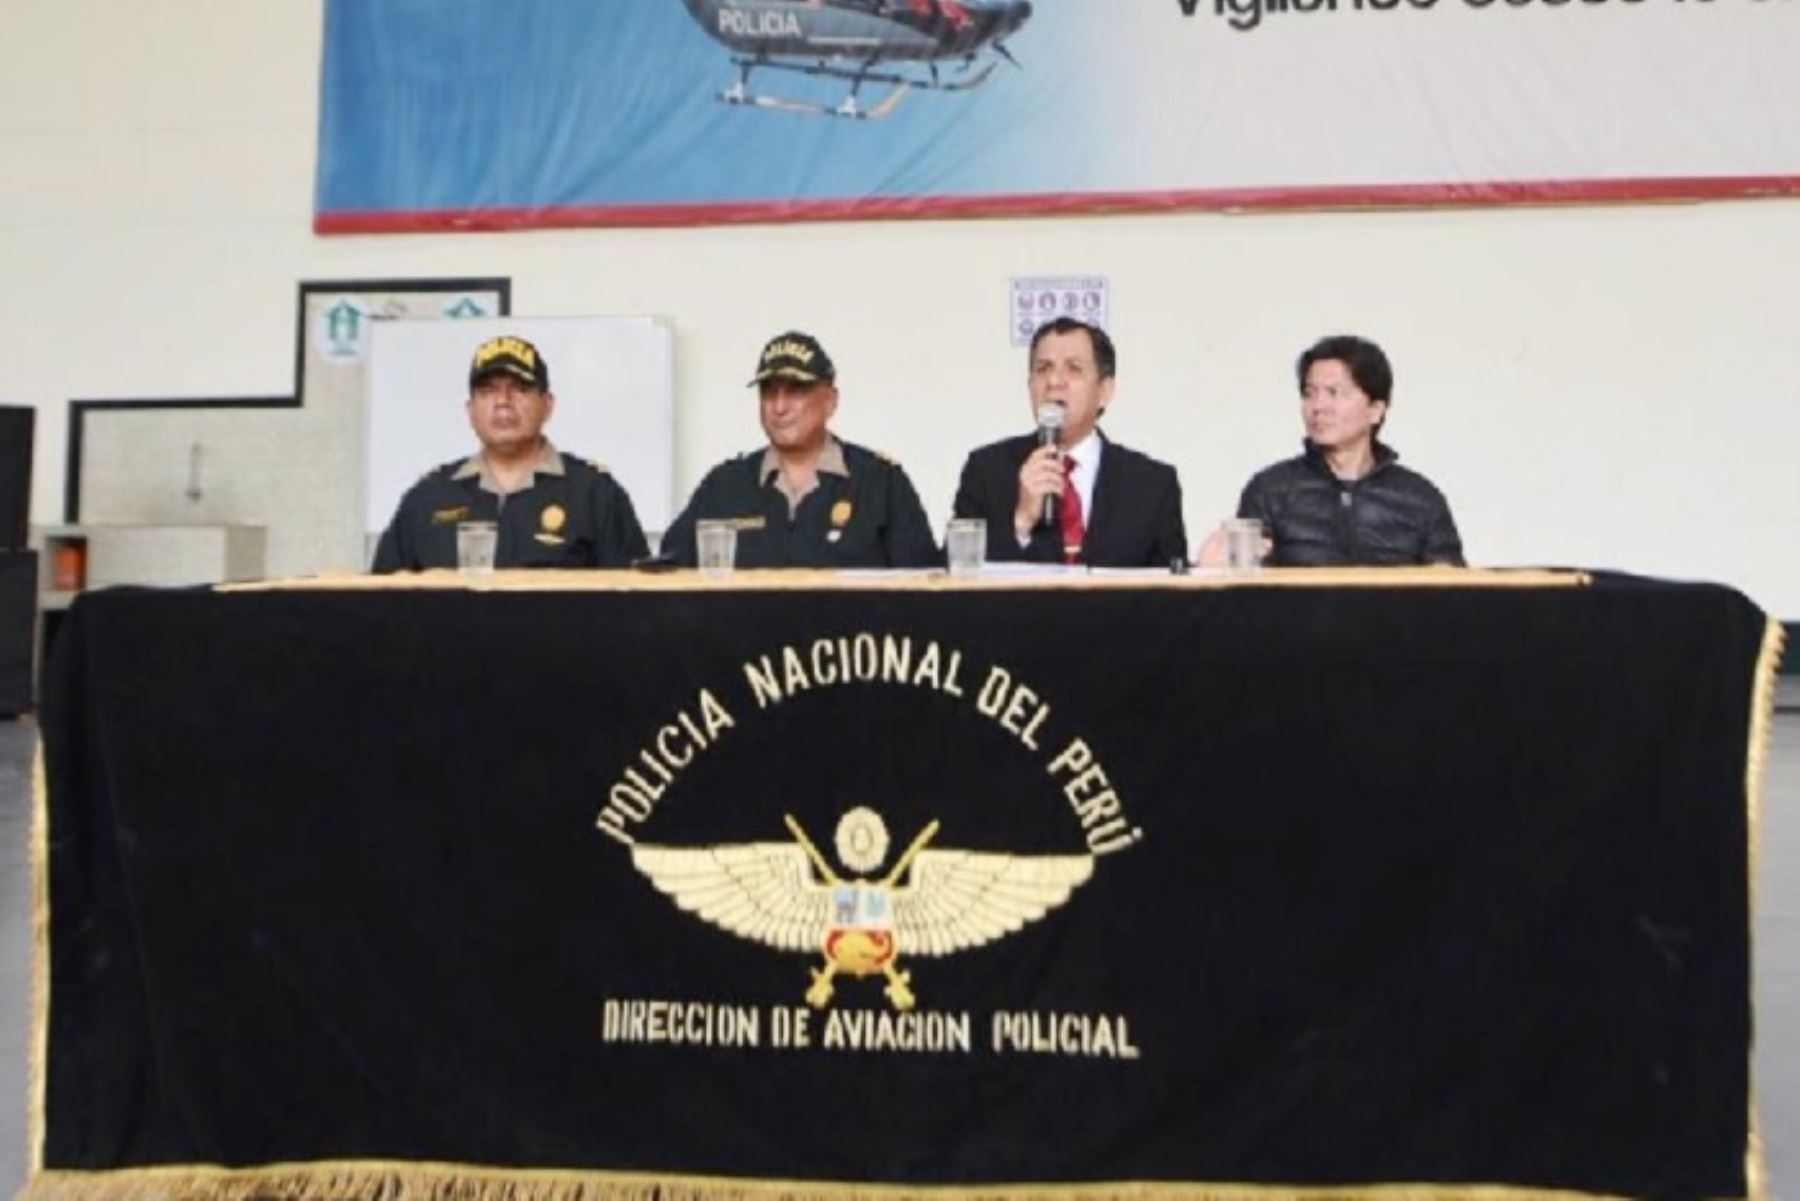 La Policía Nacional del Perú y las Fuerzas Armadas están trabajando intensamente en inteligencia y operatividad, a fin de eliminar lo que queda del terrorismo en el Vraem, que es abastecedora de droga hacia diversos puntos del Perú del extranjero, sostuvo el ministro del Interior, Mauro Medina.